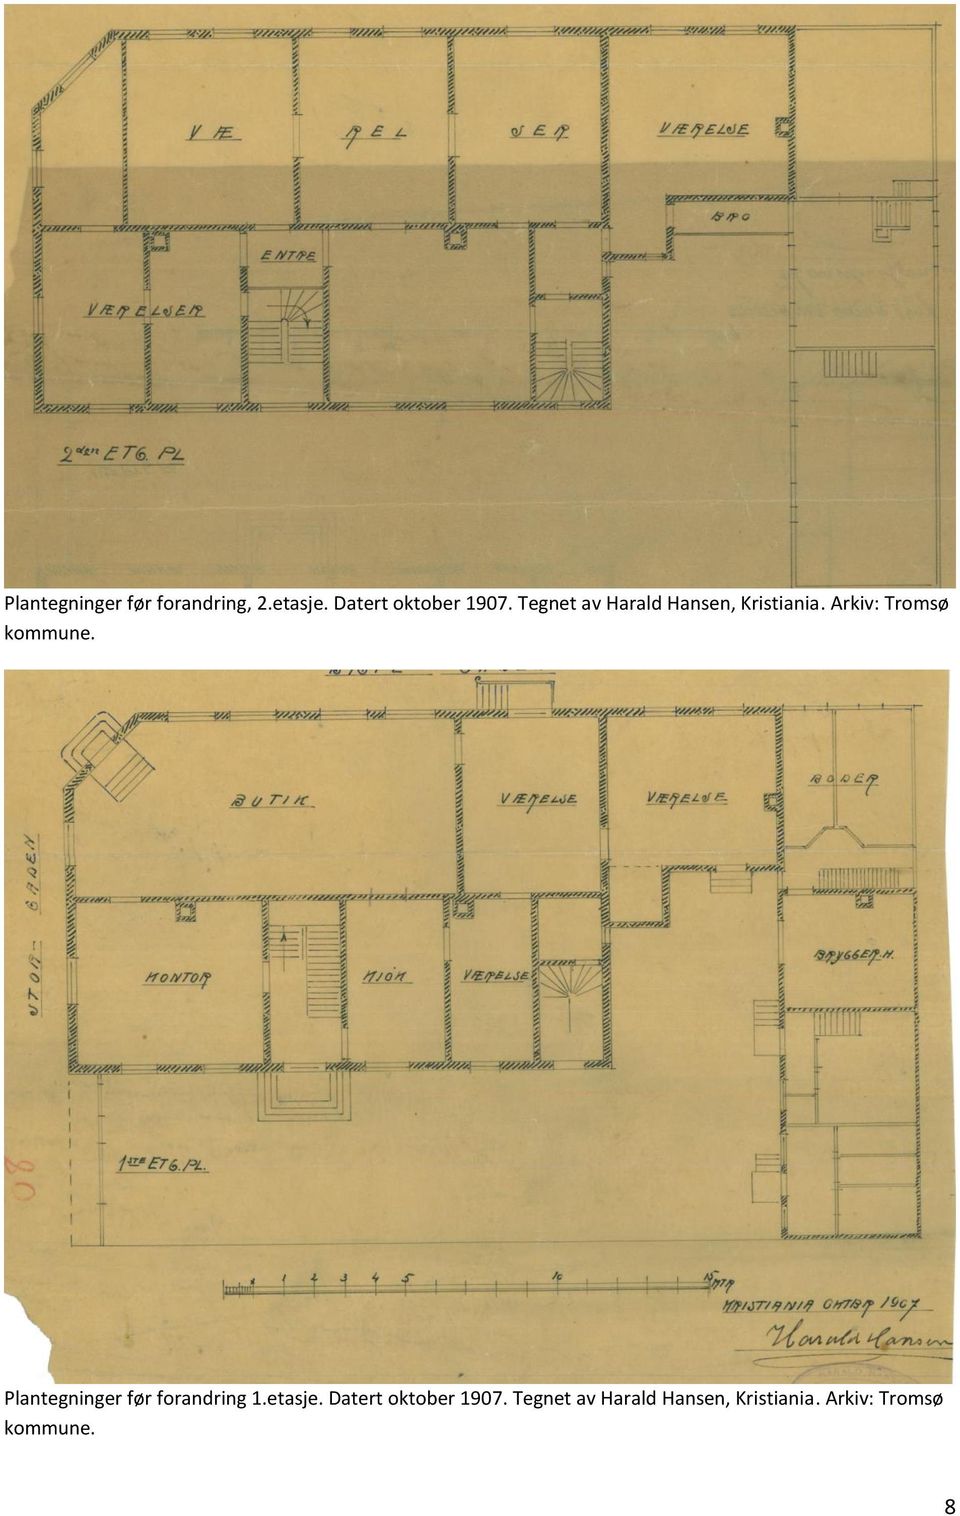 Plantegninger før forandring 1.etasje. Datert oktober 1907.